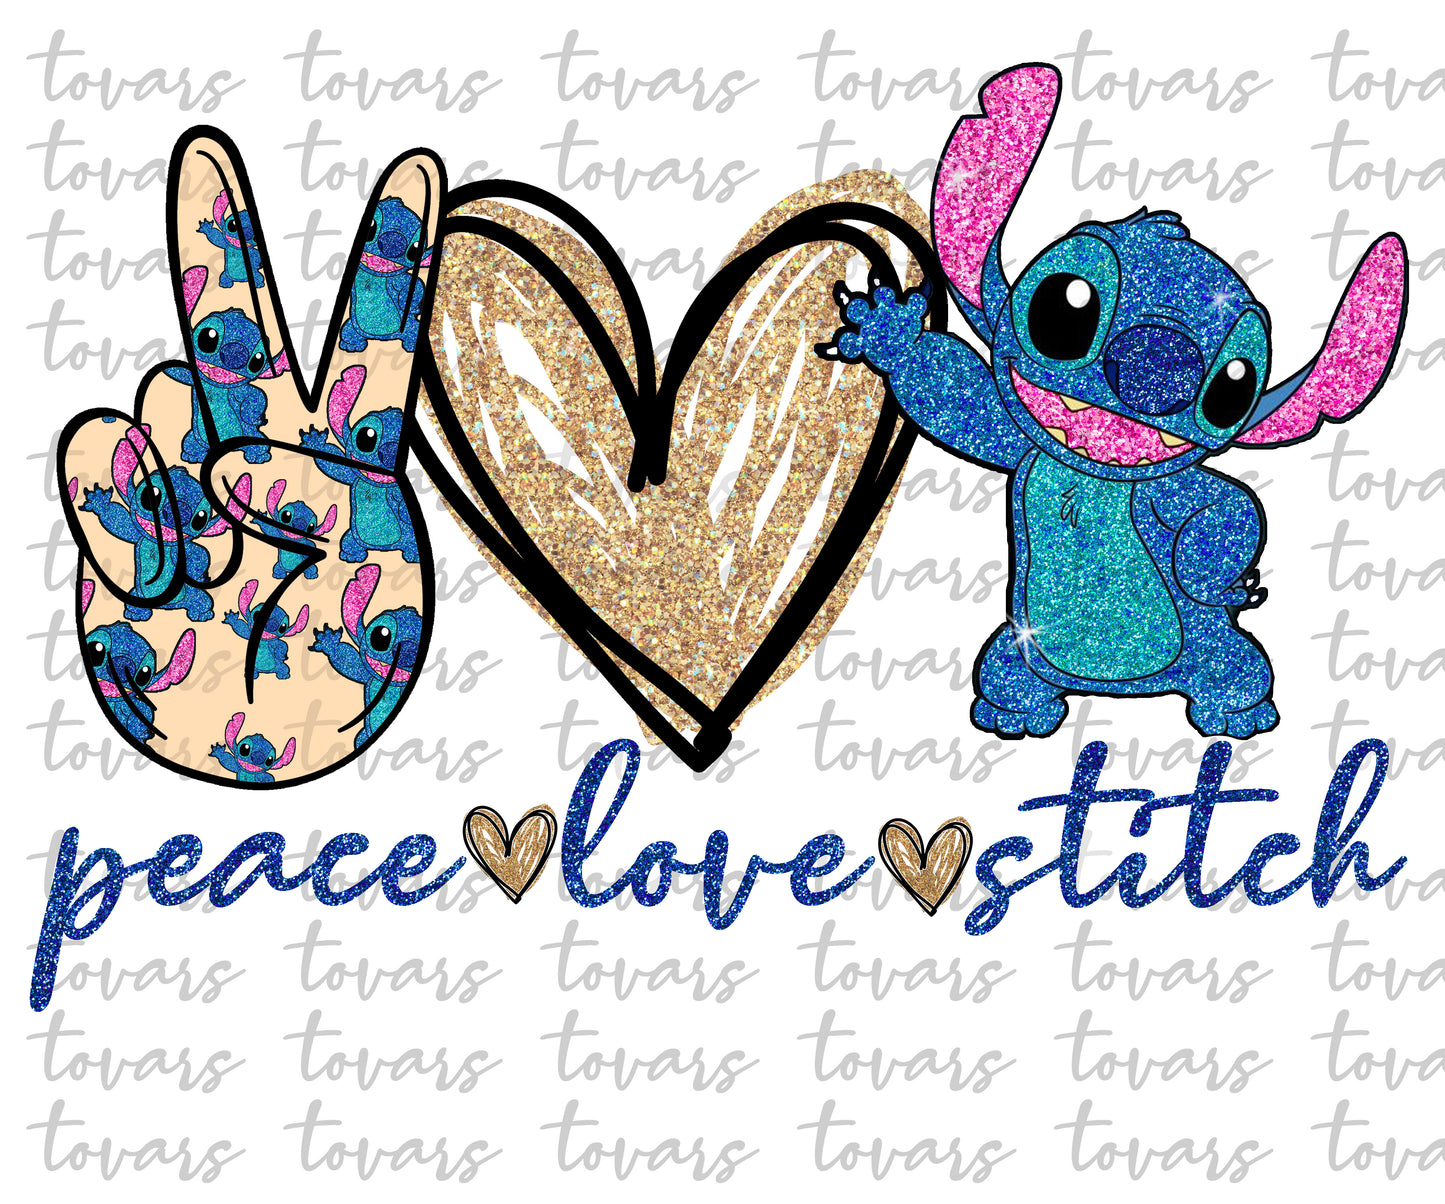 Peace love Stitch Sublimation Png Digital Download, Peace love Stitch Png, Peace love Stitch PNG, Stitch sublimation